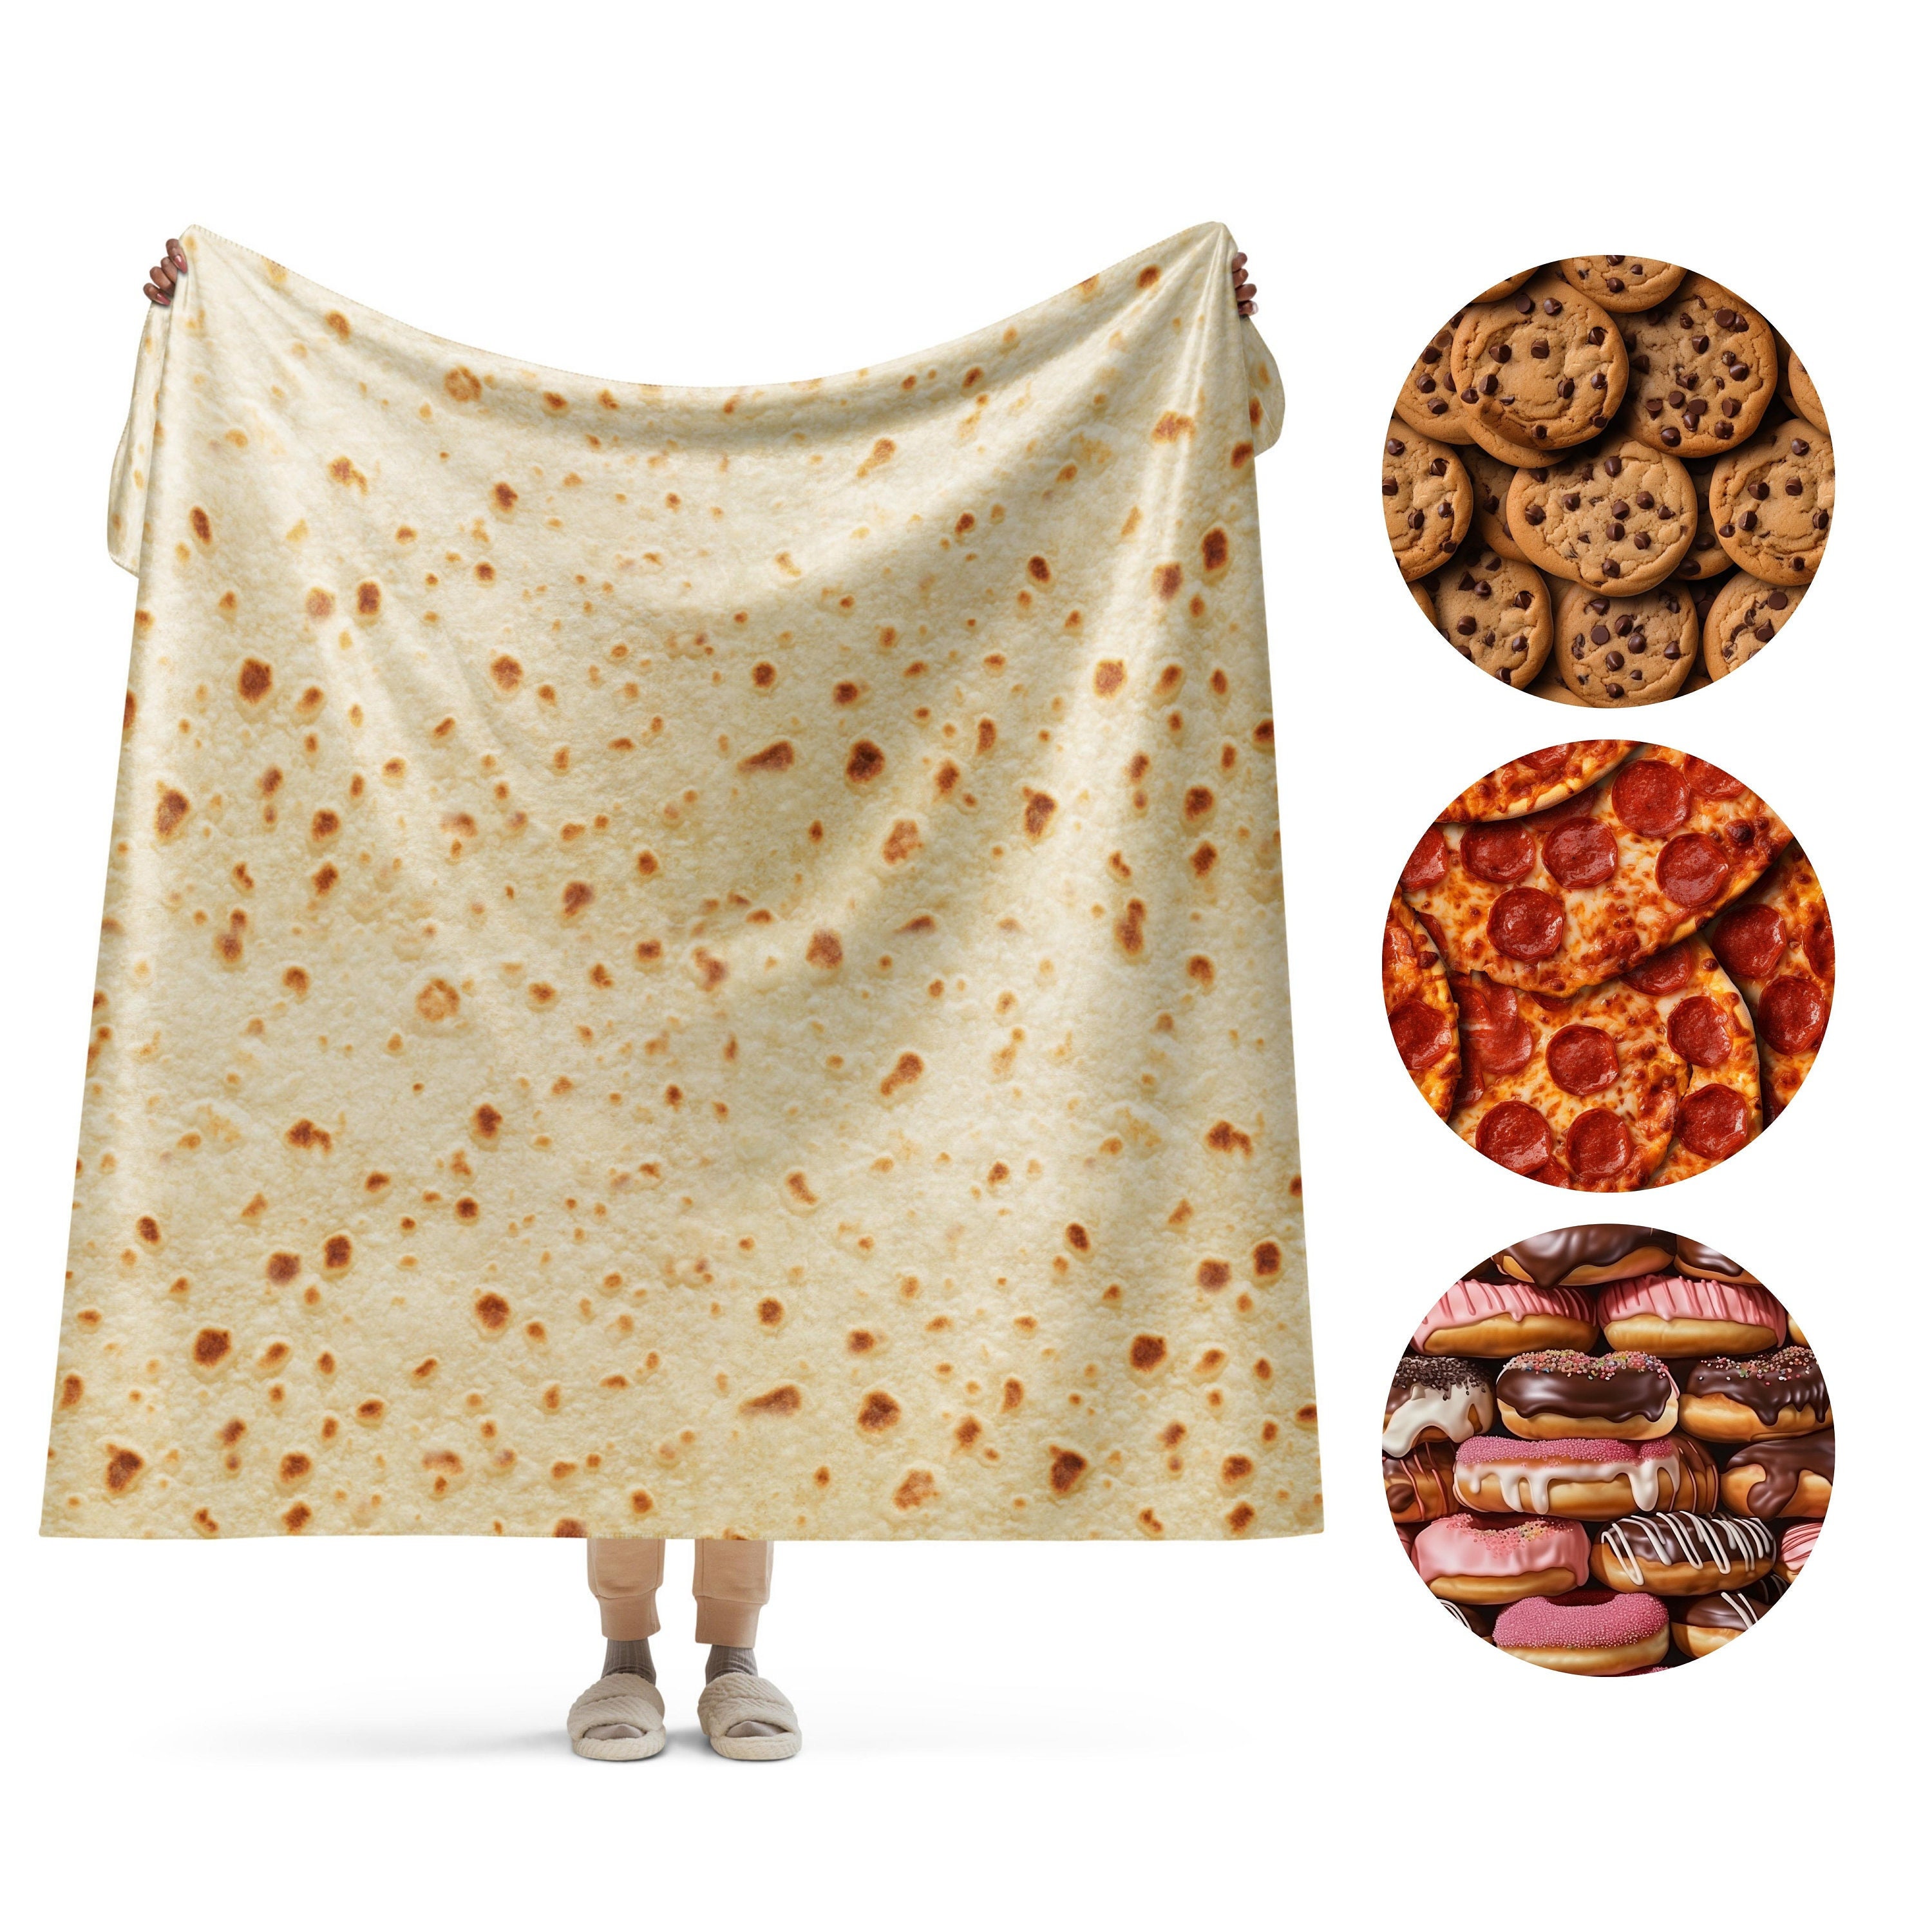 Popular Microfiber Super Soft Burrito Tortilla Round Pizza Blanket